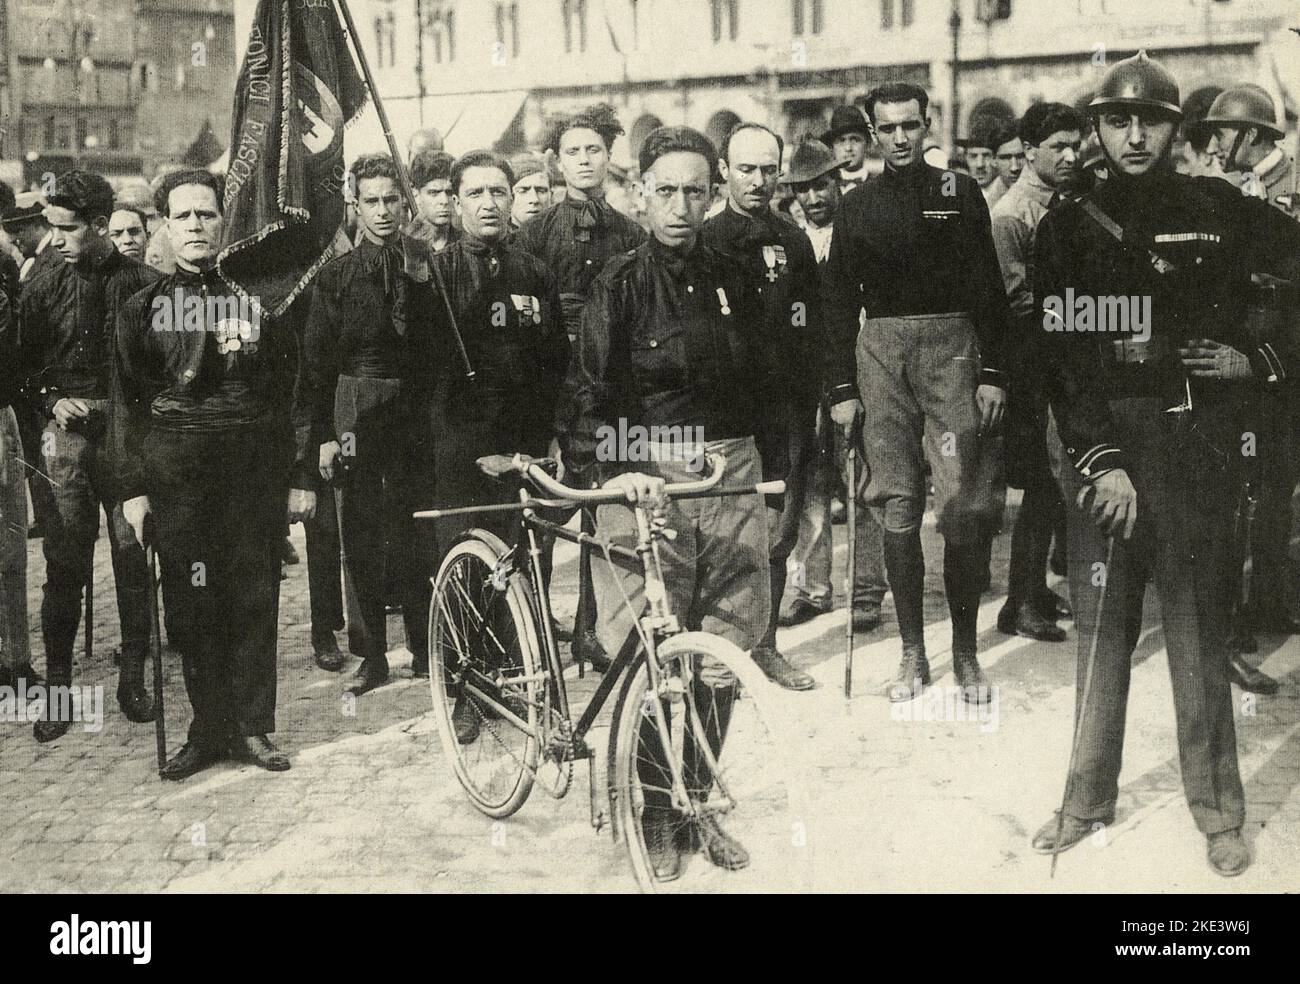 Partecipants à la marche fasciste sur Rome, Italie octobre 1922 Banque D'Images